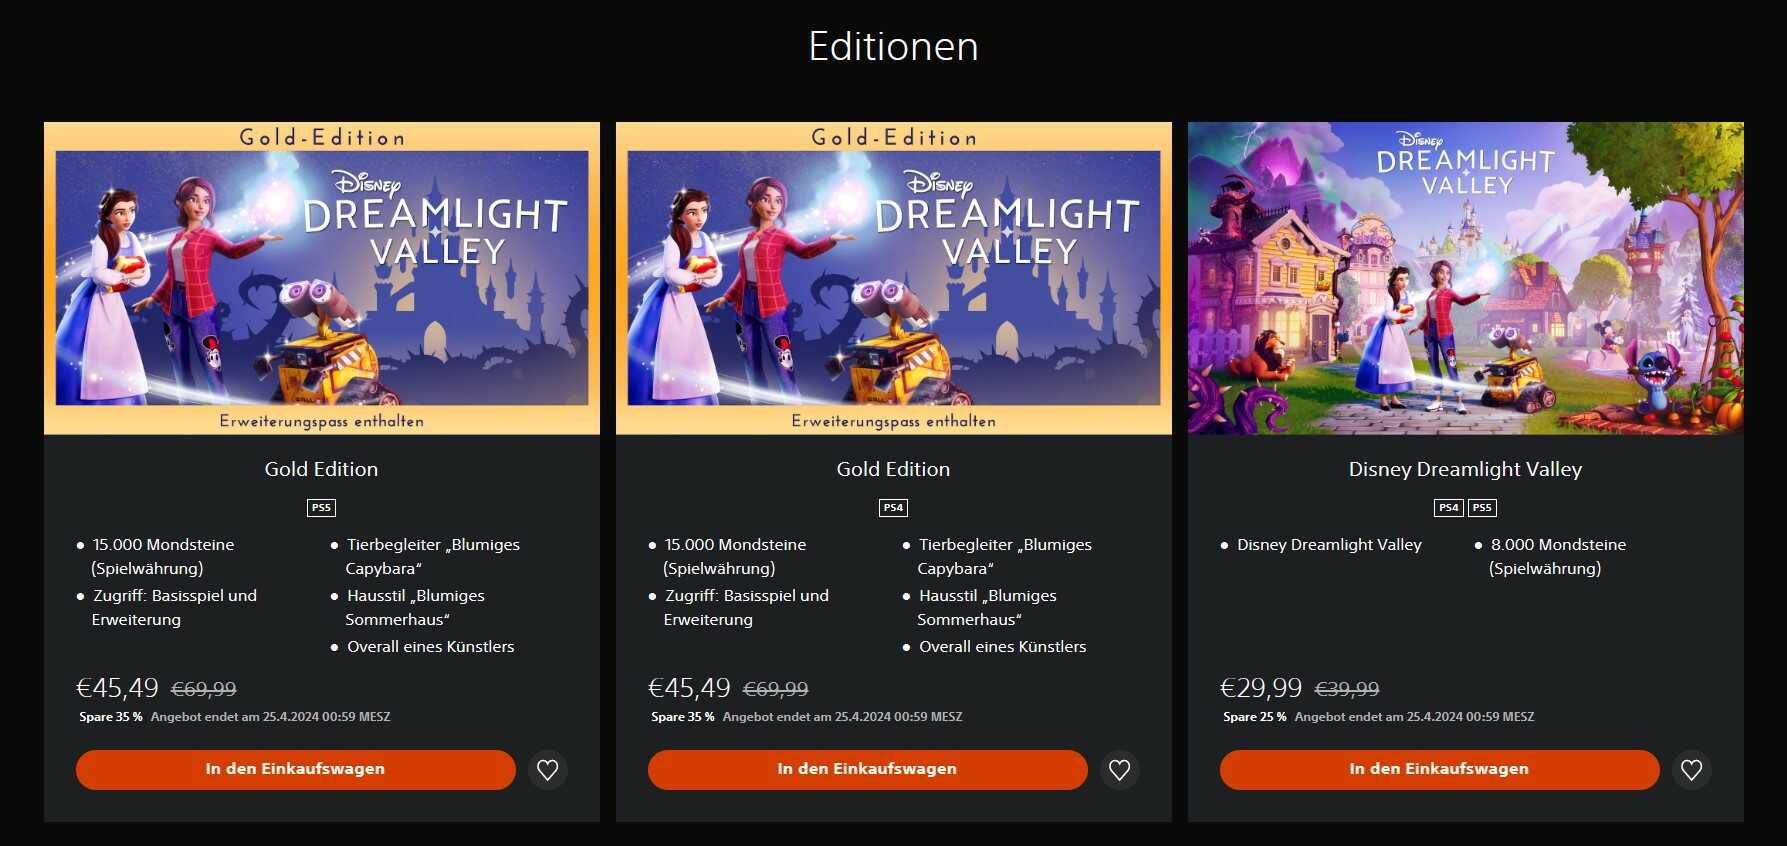 Disney Dreamlight Valley für PlayStation 4 + 5 | (Standard) 29,99€ statt ab 35€ | (Gold) 45,49€ statt 69,99€